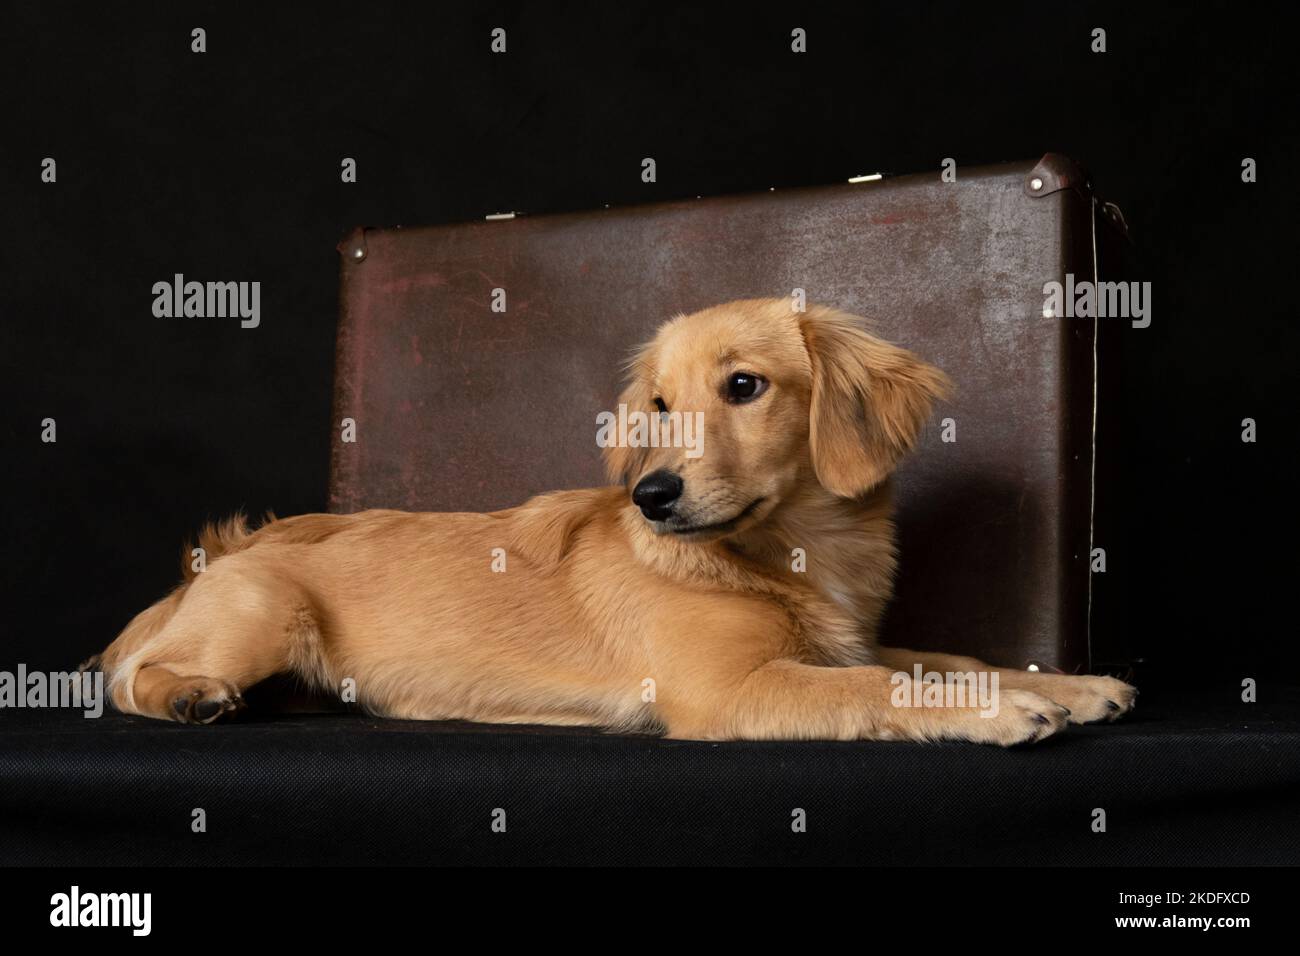 Im Studio liegend ein rothaariger Hund, ähnlich einem Dackel, neben einem Koffer, auf schwarzem Hintergrund Stockfoto